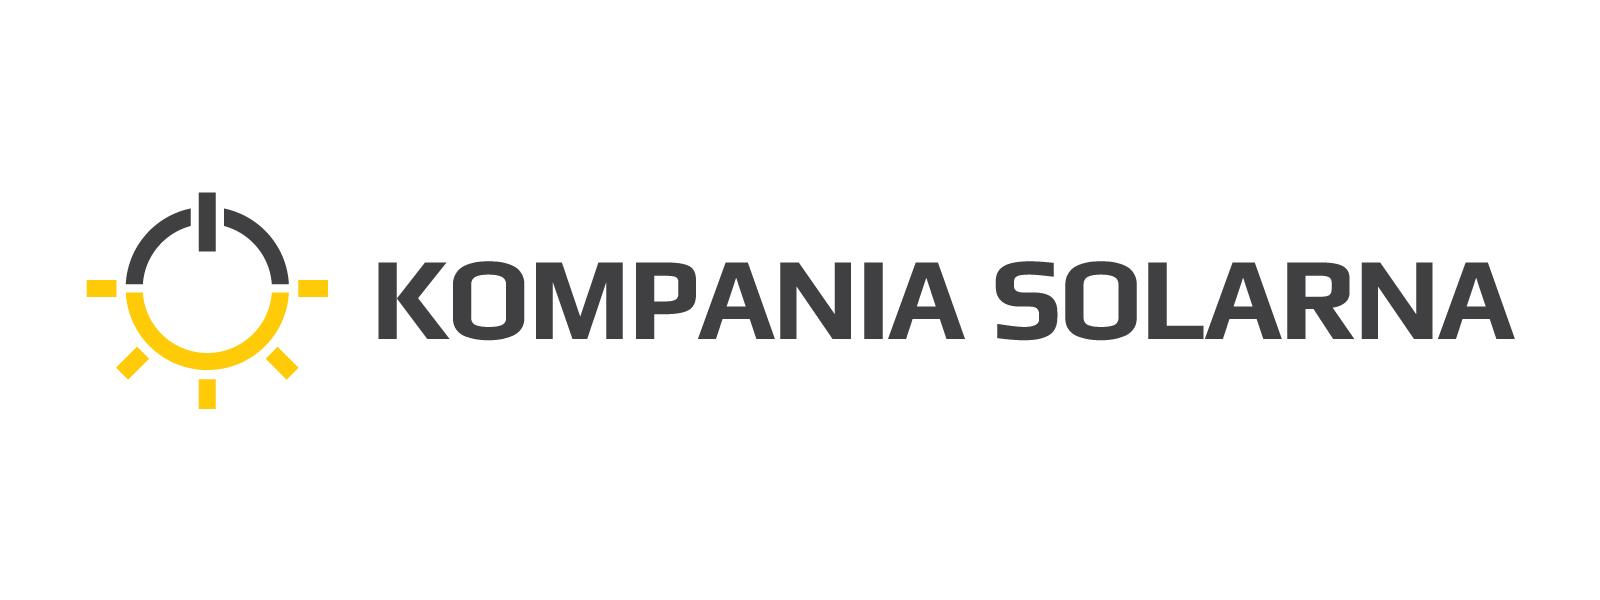 KOMPANIA SOLARNA Sp. z o.o.